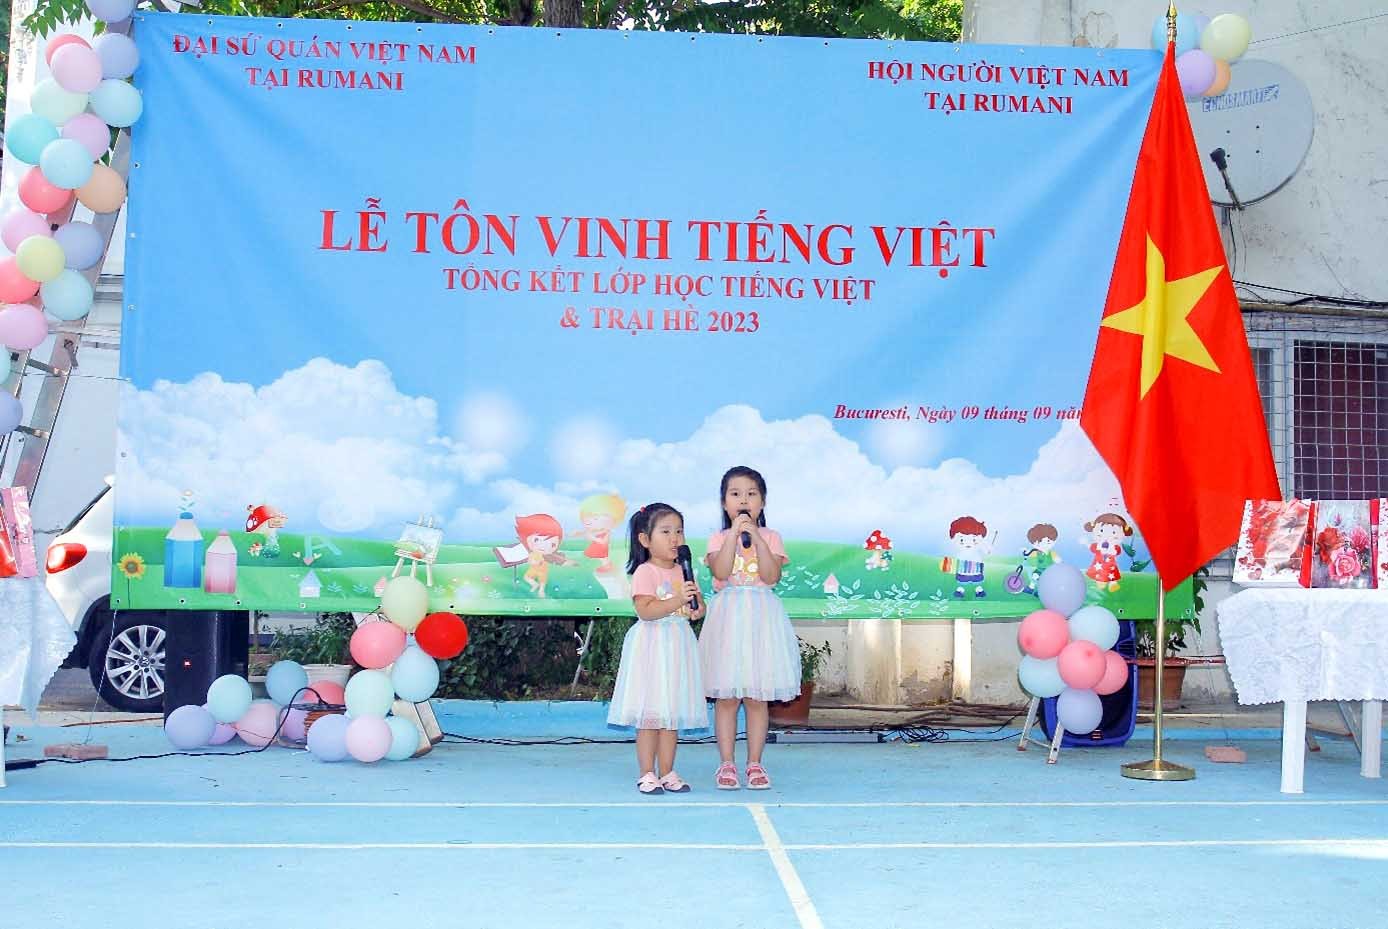 Gìn giữ tiếng Việt trong cộng đồng người Việt Nam tại Romania